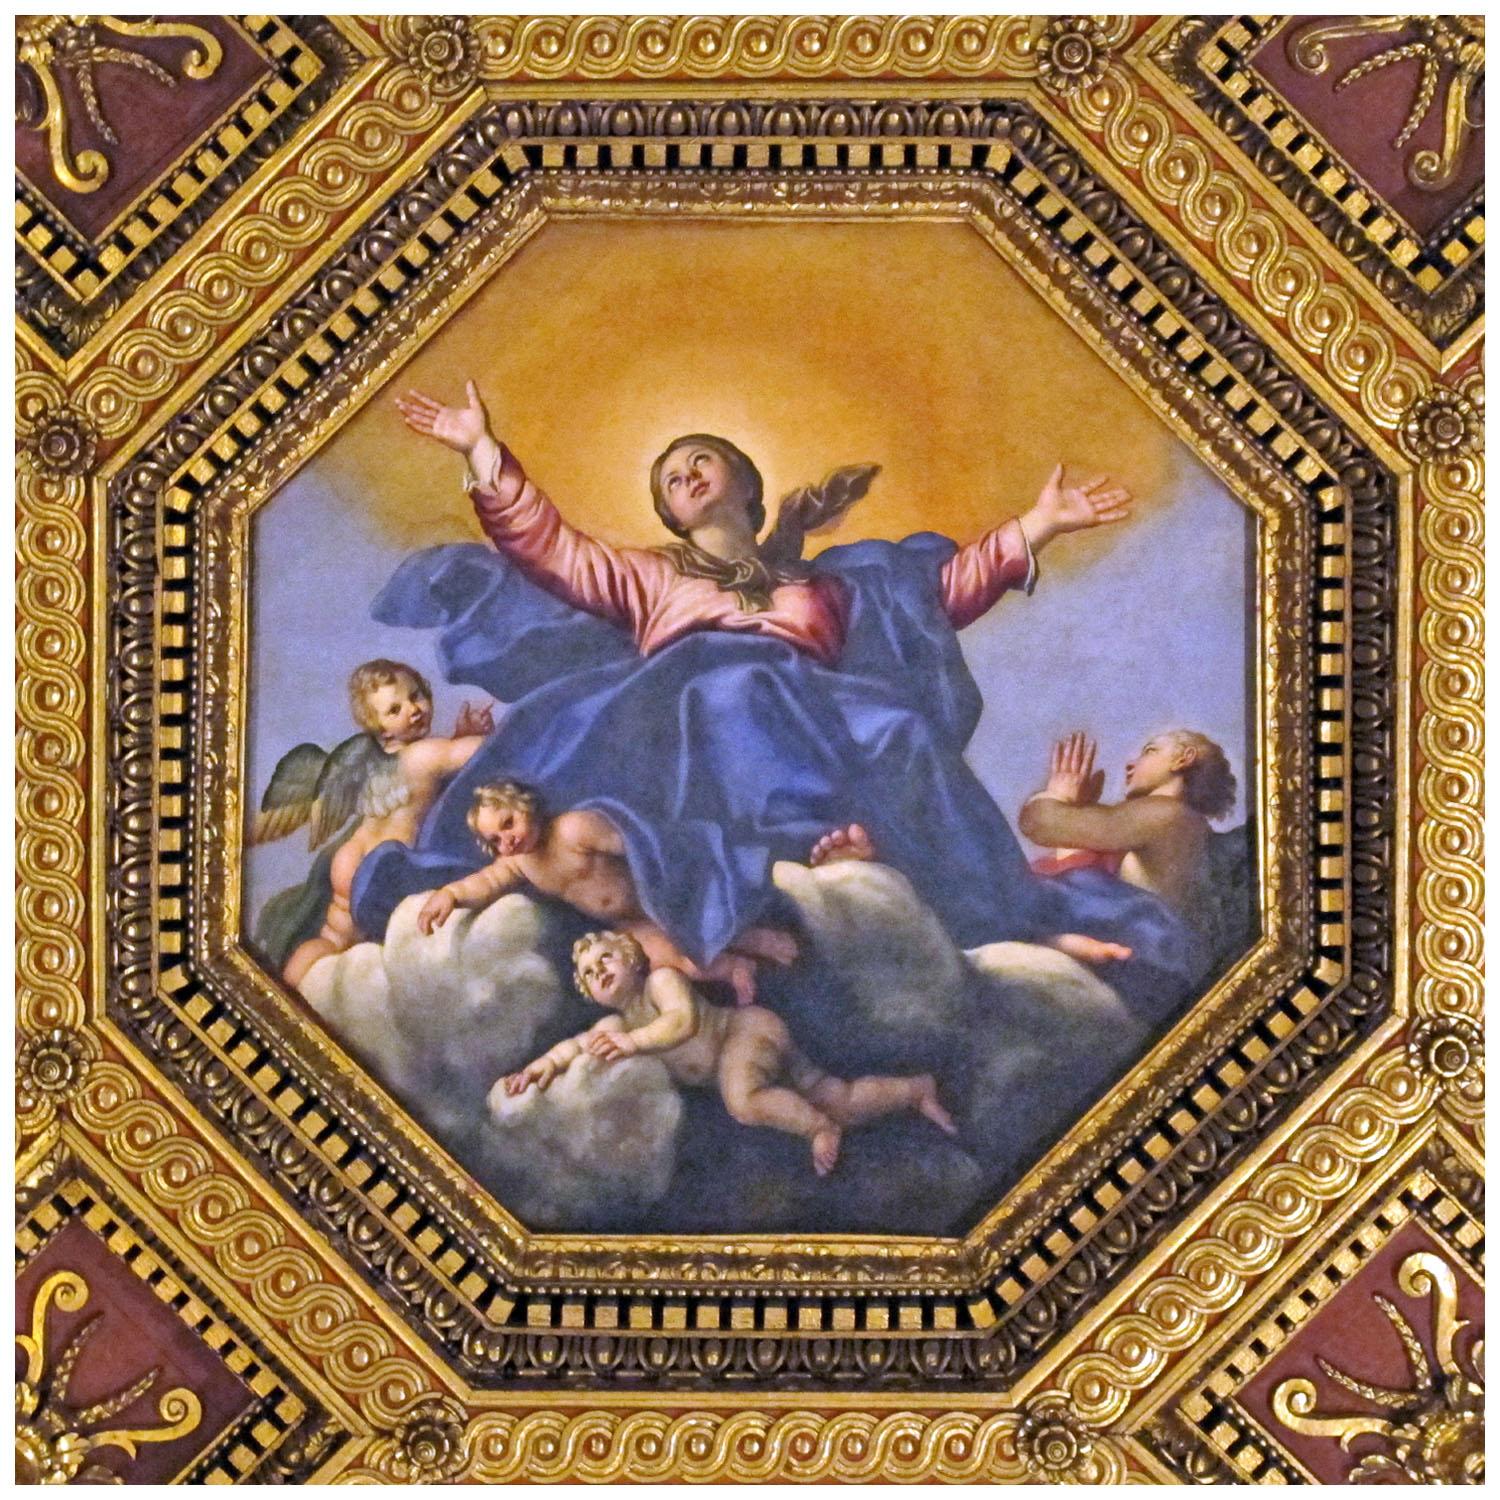 Domenichino. Assunzione. 1613. Chiesa di Santa Maria in Trastevere, Roma